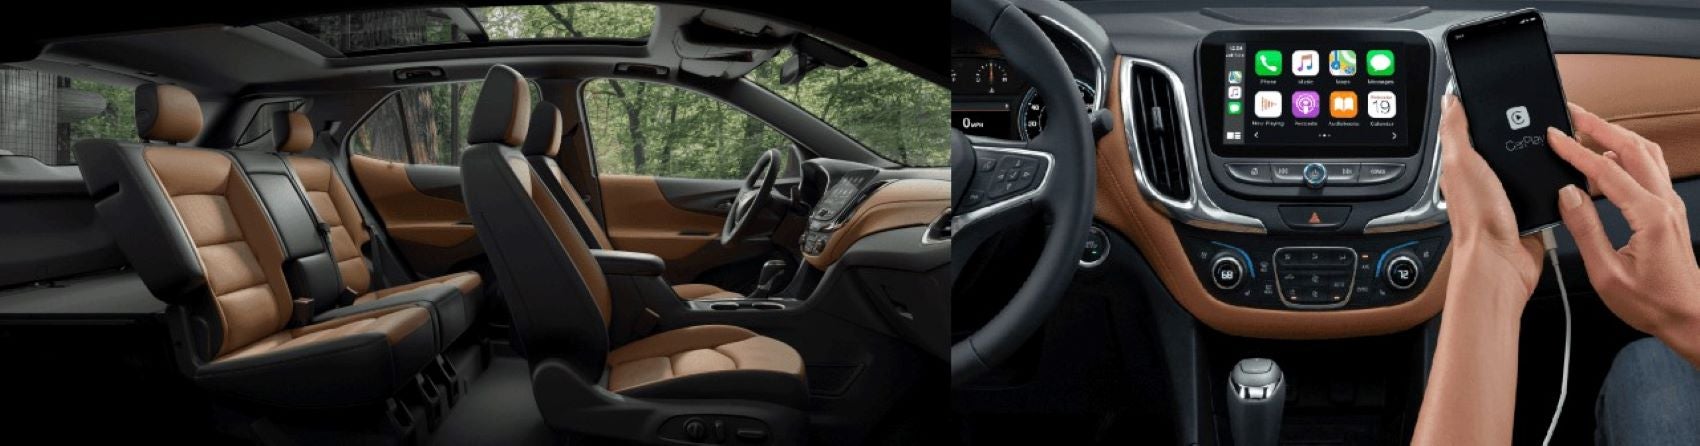 2021 Chevrolet Equinox Interior Features